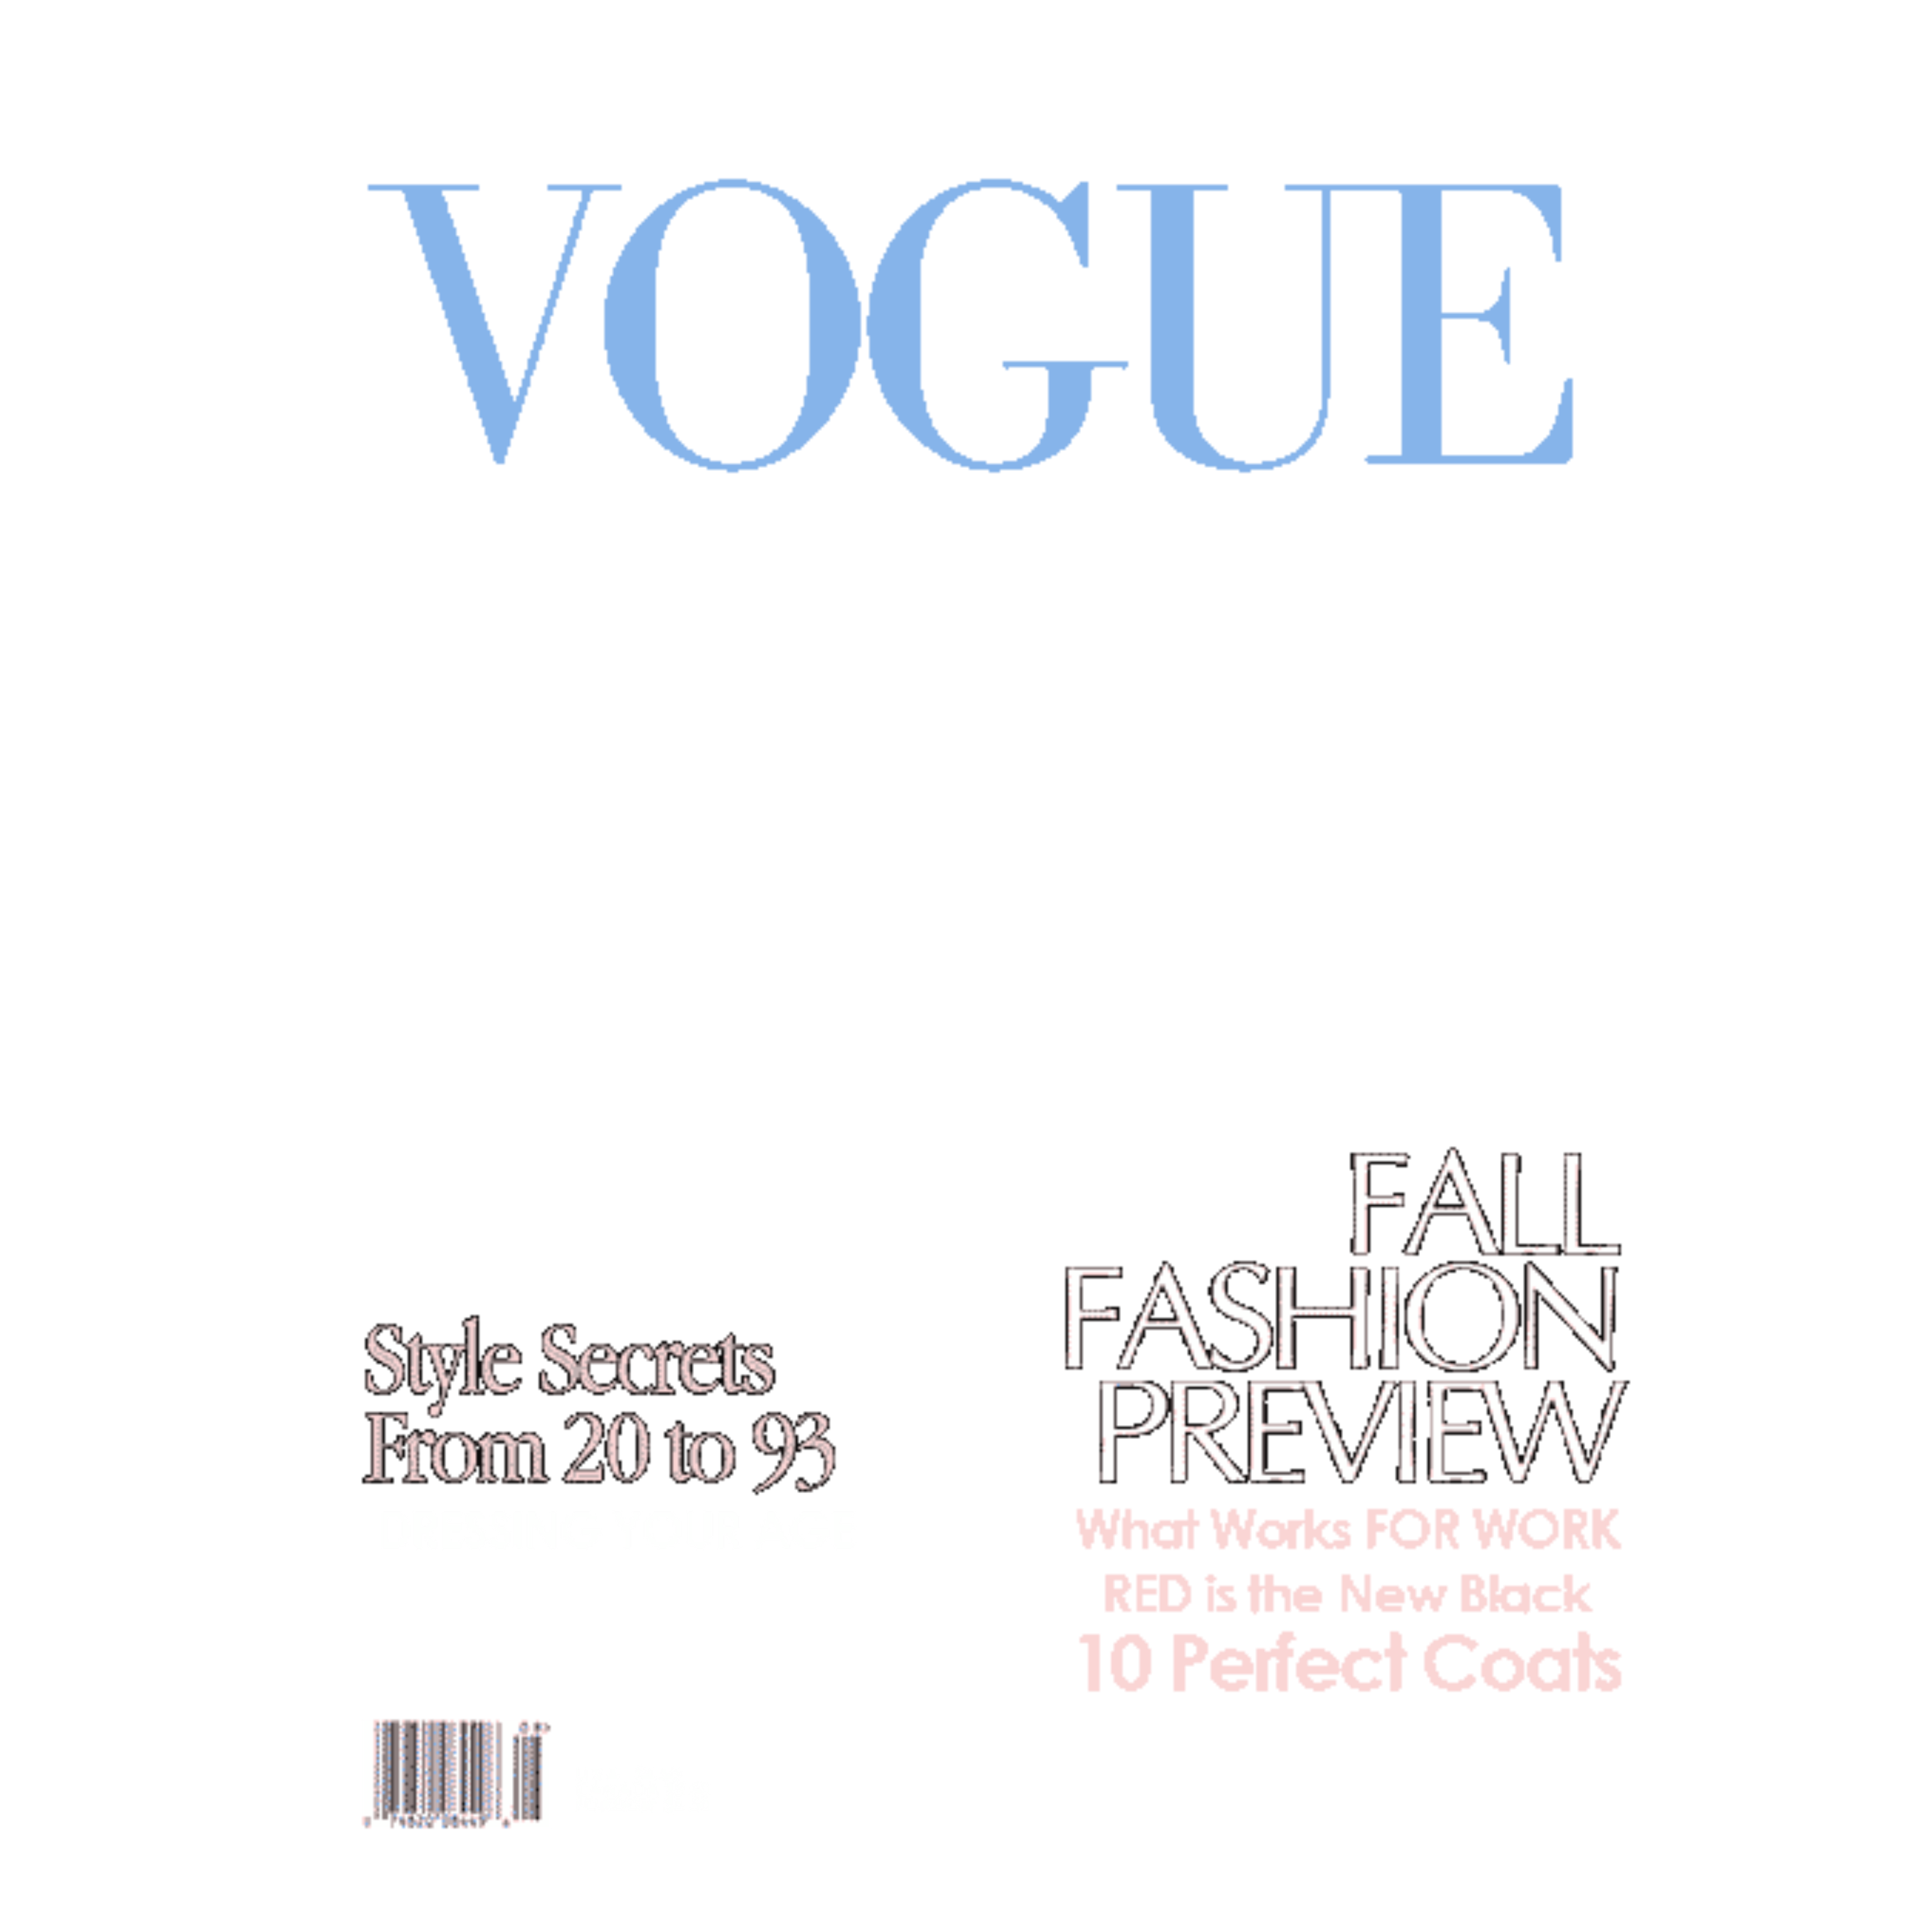 Шаблоны журналов для фотошопа. Обложка журнала Vogue для фотошопа на прозрачном фоне. Vogue журнал на прозрачном фоне. Надписи с обложки Vogue. Обложка журнала Vogue.